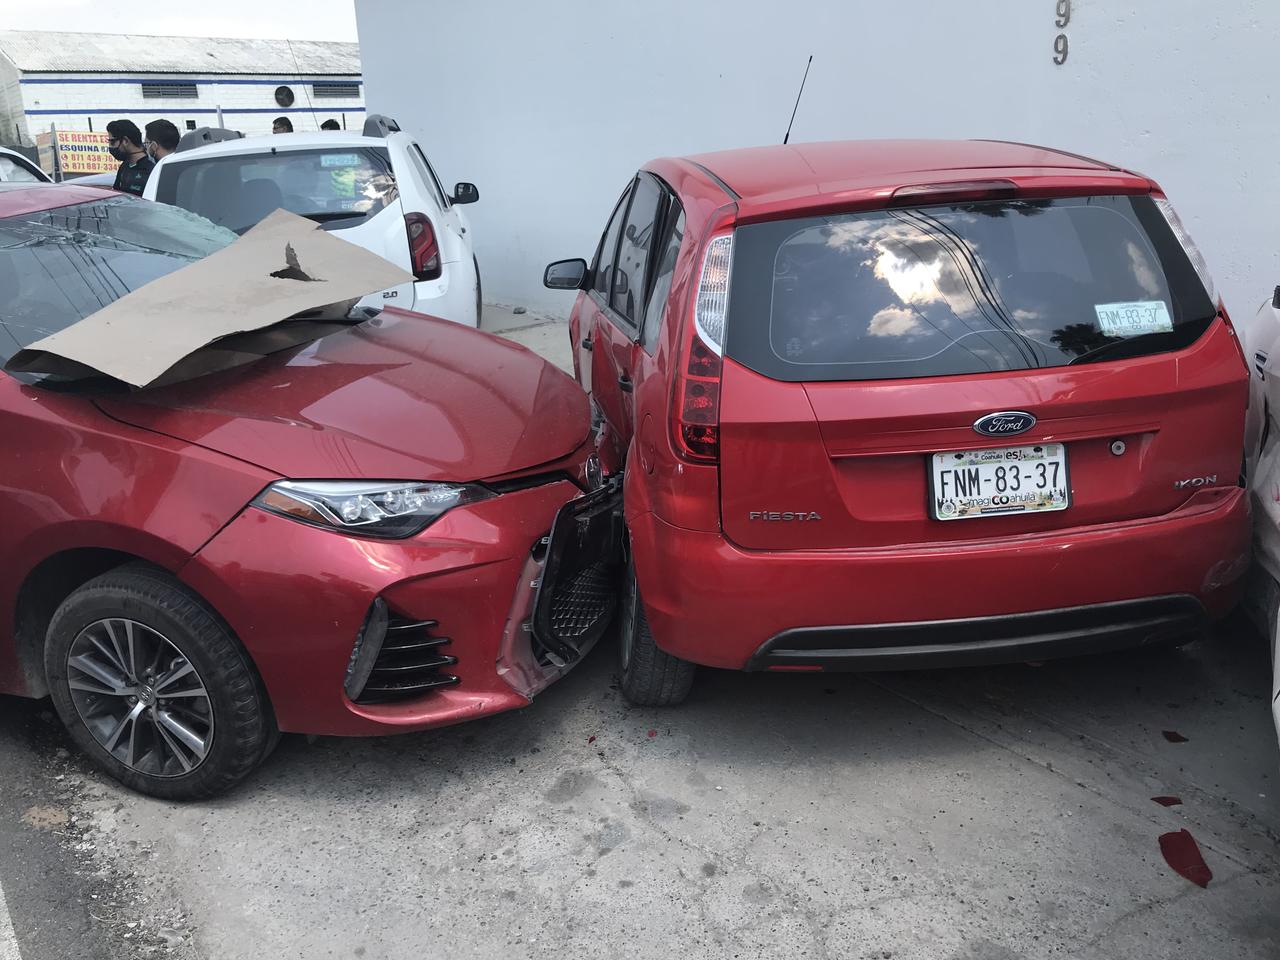 La tarde de este sábado se registró un accidente vial en la Ciudad Industrial de Torreón donde se vieron involucrados seis vehículos, dos en movimiento y cuatro más estacionados. (ARCHIVO)